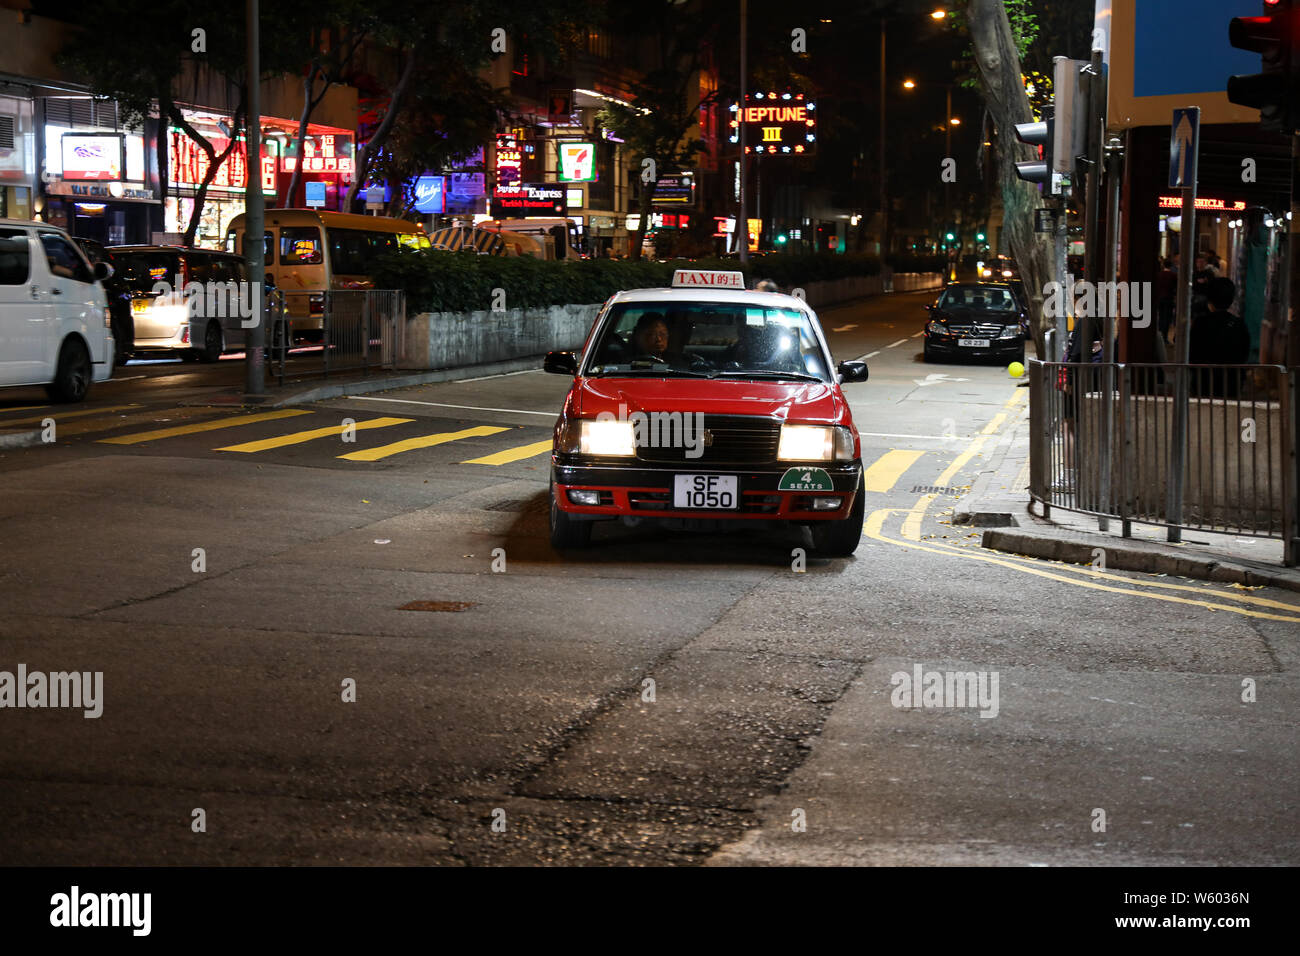 Schönen Abend Bild von Red urban Taxi in beleuchteten Straßenecke in Wan Chai, Hong Kong Stockfoto